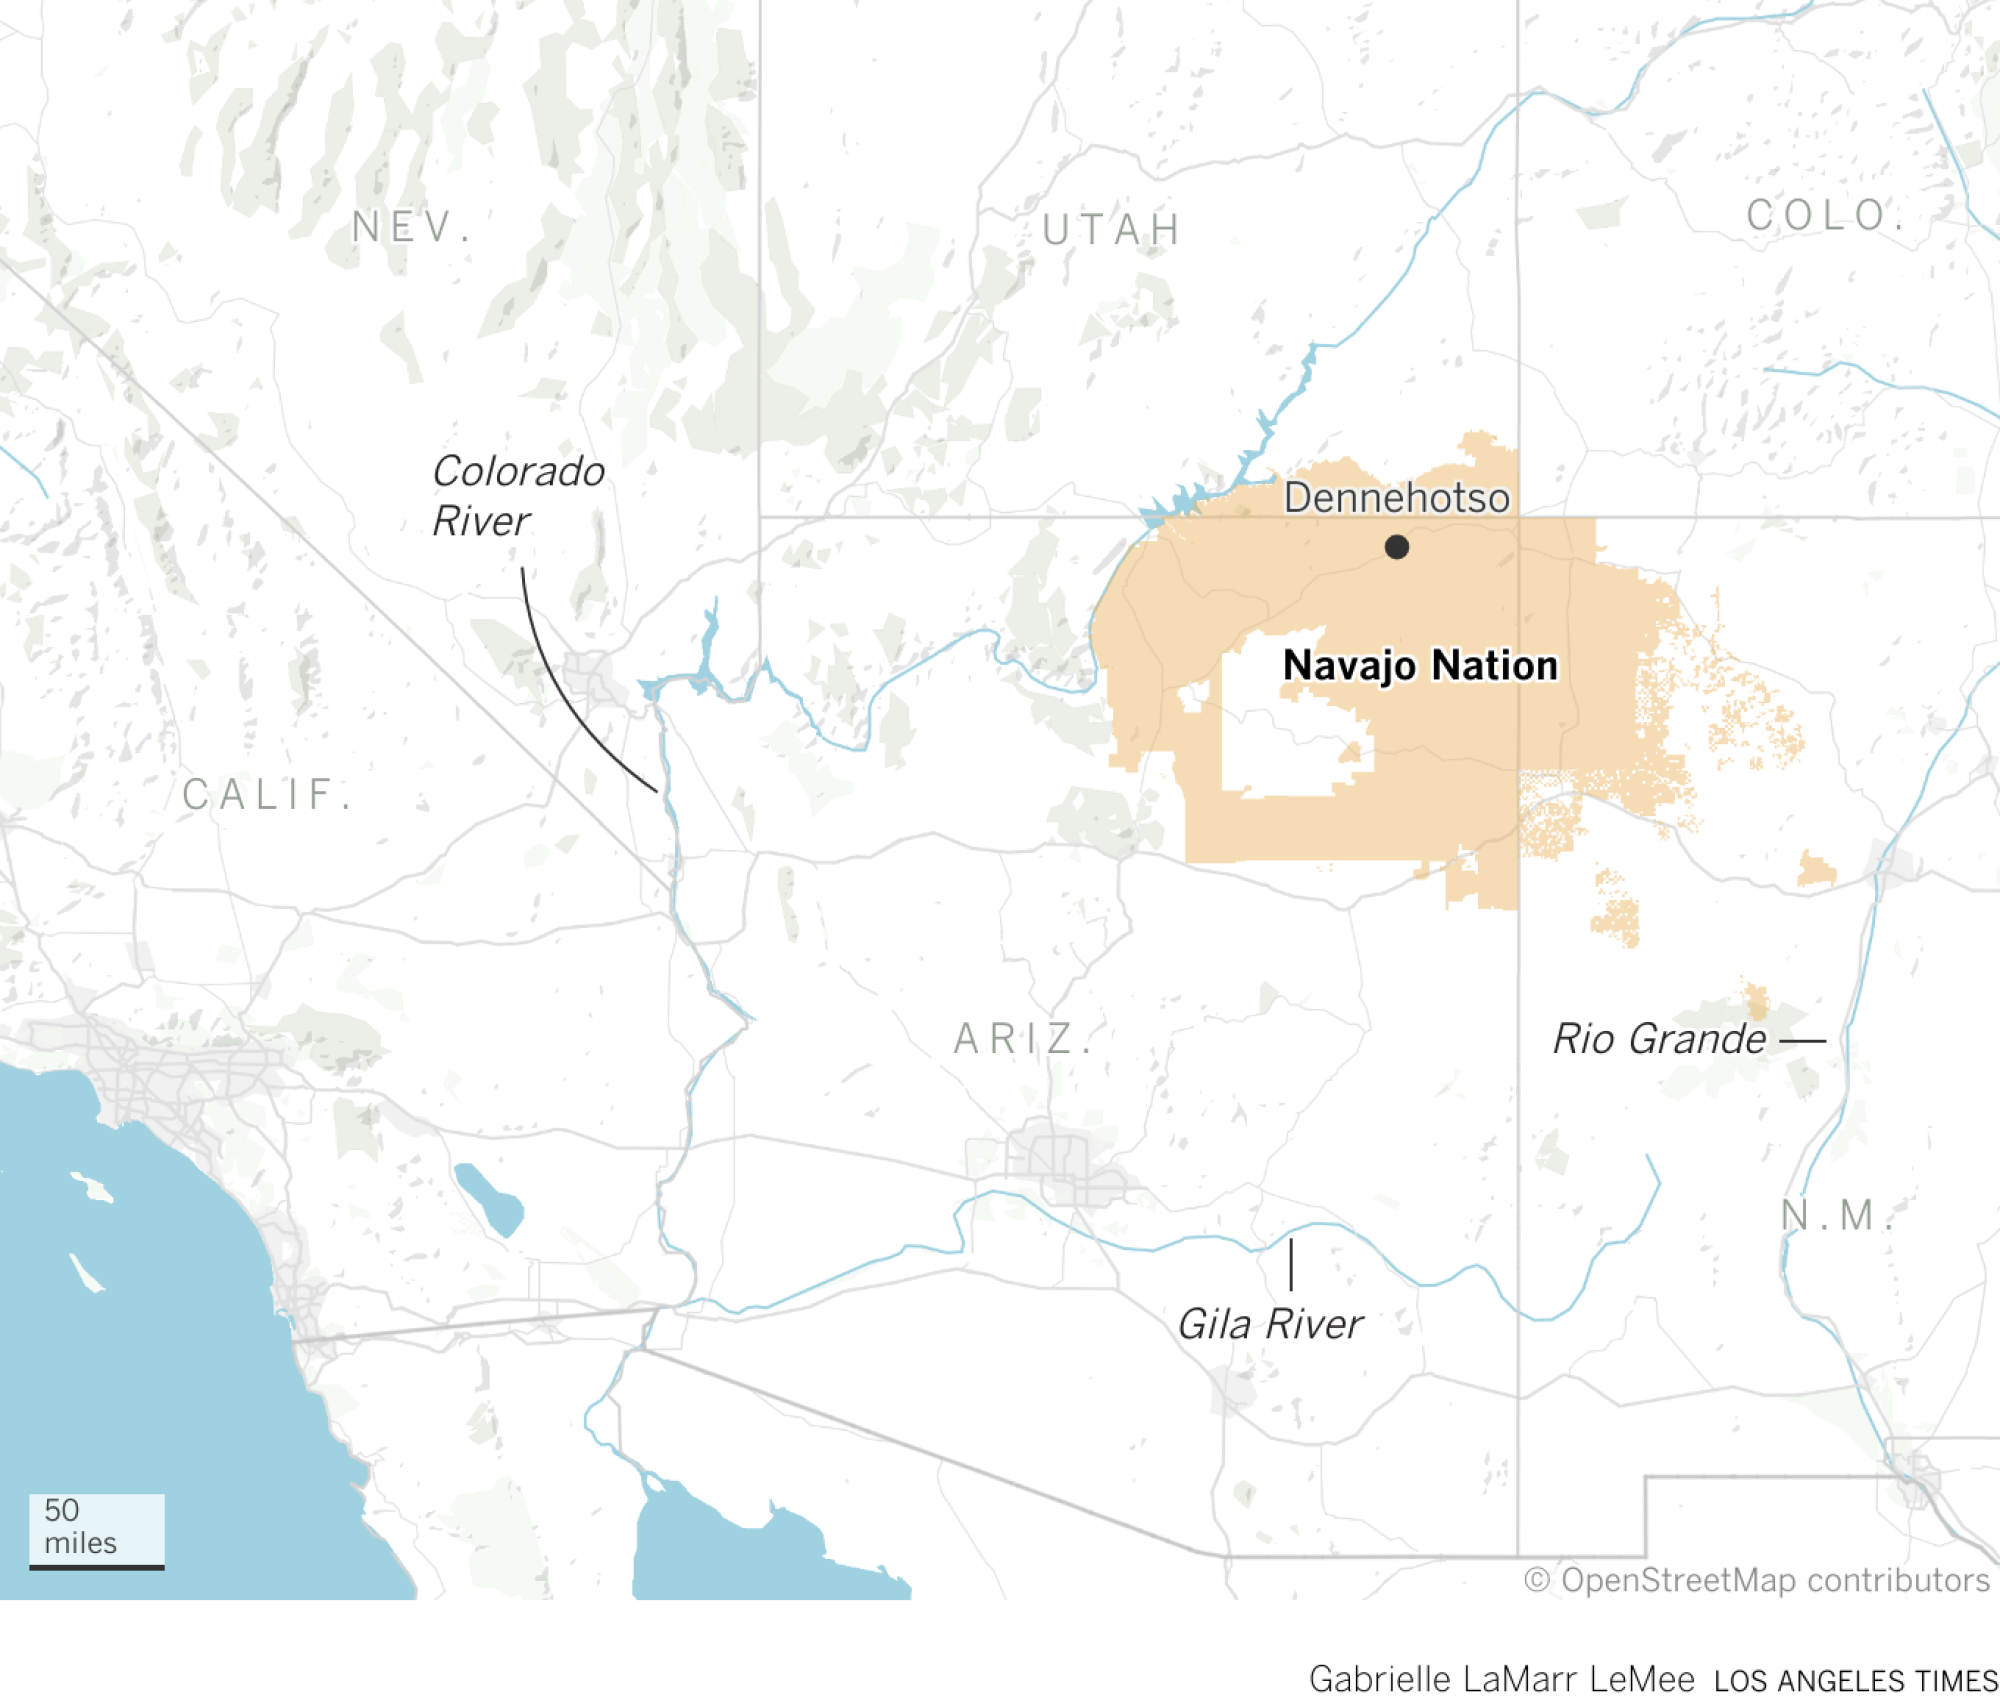 亚利桑那州、新墨西哥州和犹他州的纳瓦霍族边界地图。 毗邻边界的科罗拉多河也被突出显示。